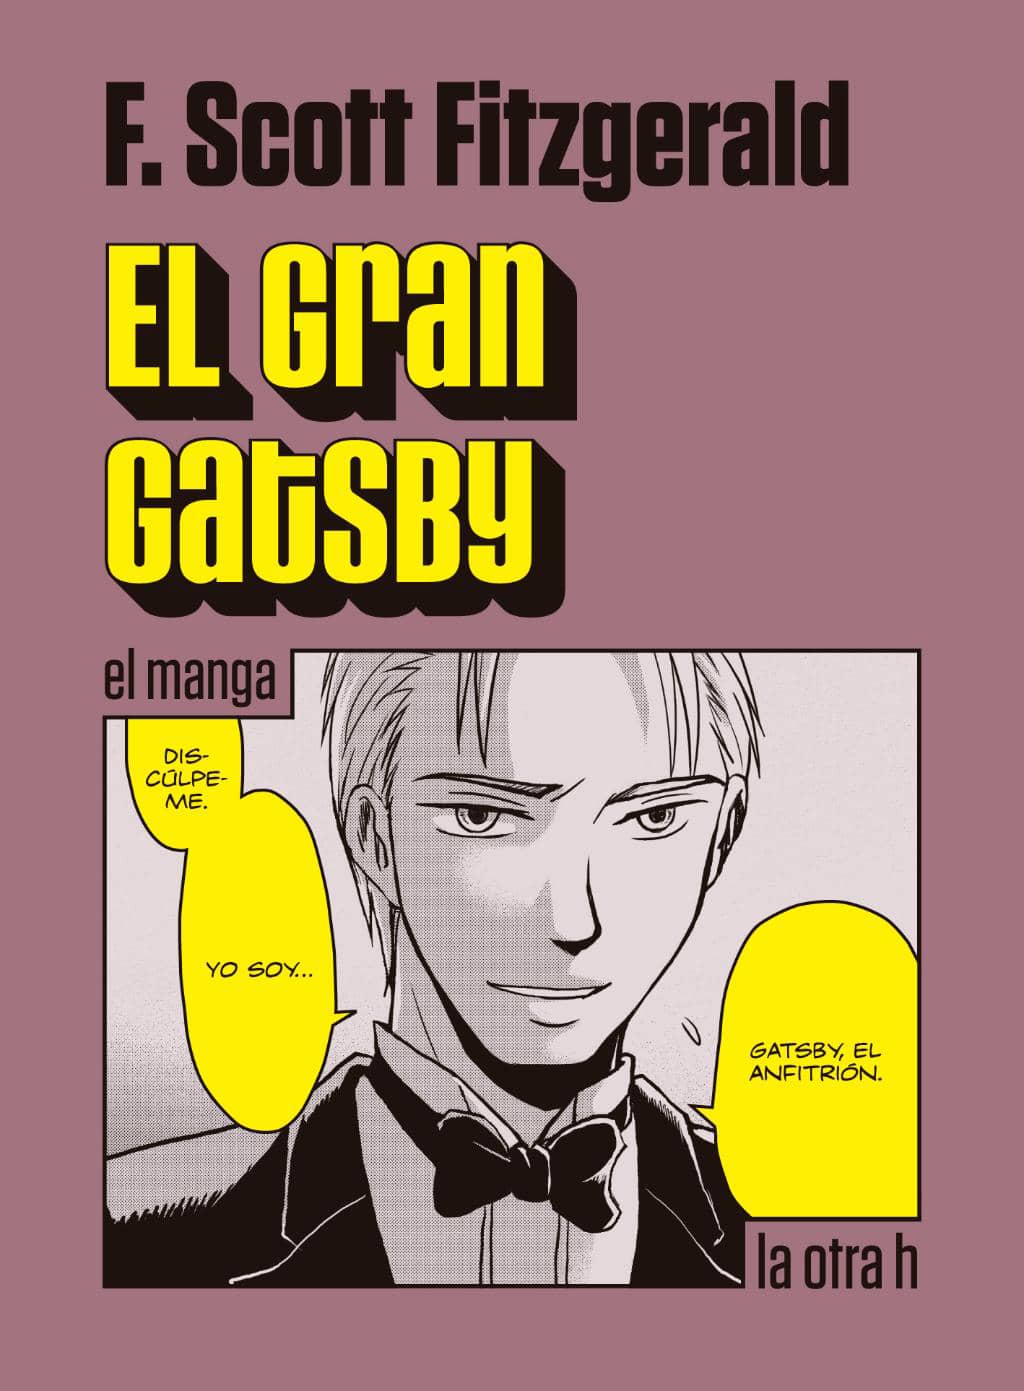 EL GRAN GATSBY (MANGA)